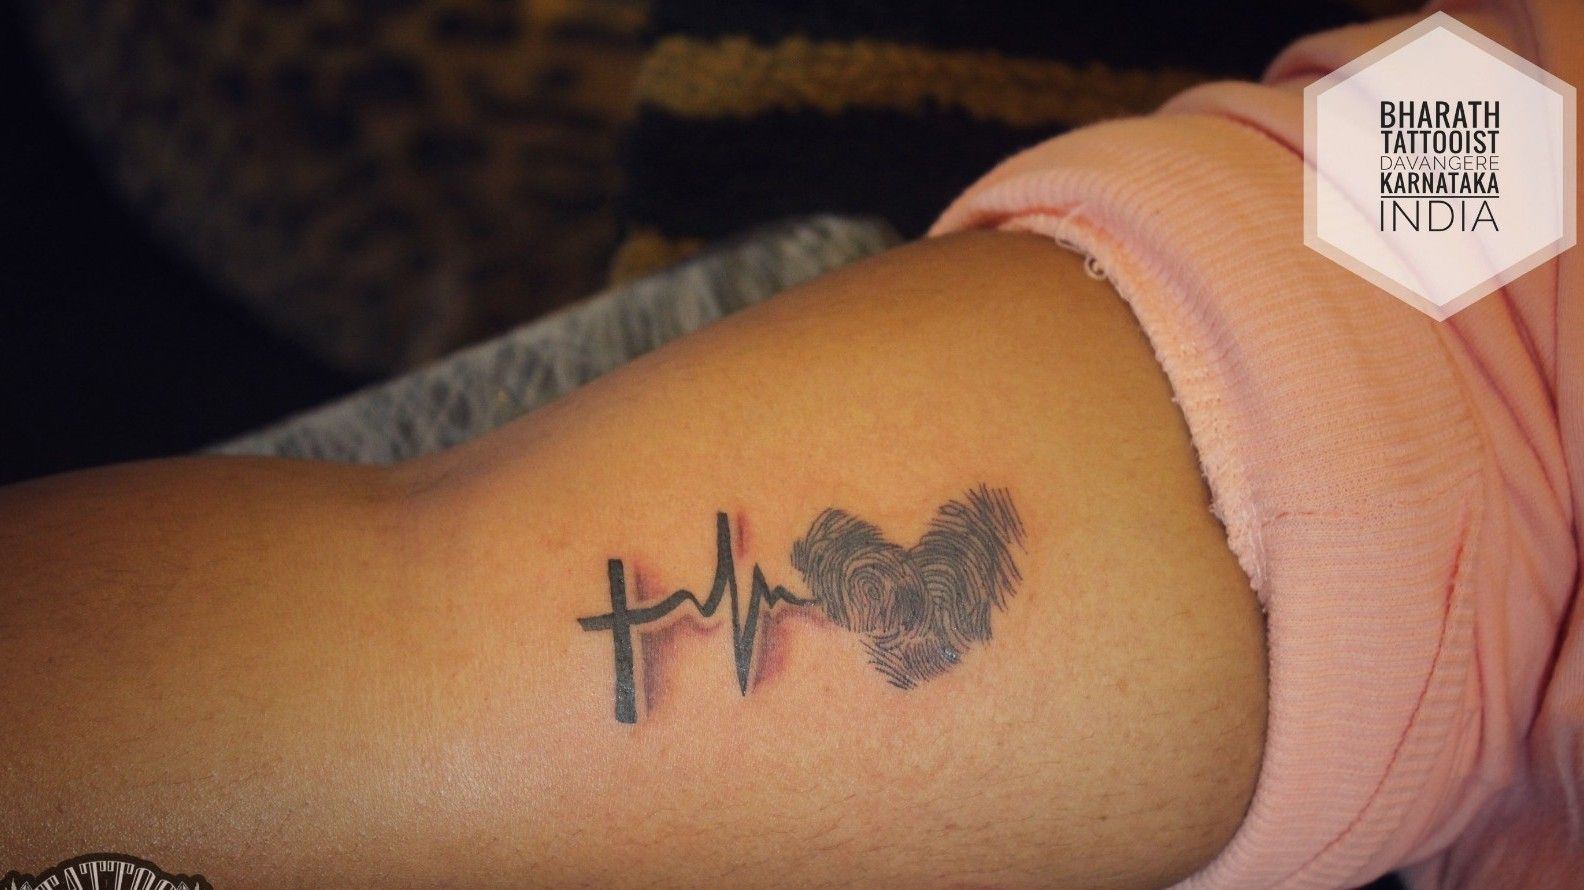 Heartbeat tattoo heartbeat tattoo designs | Cute tattoos on wrist, Heartbeat  tattoo design, Heartbeat tattoo